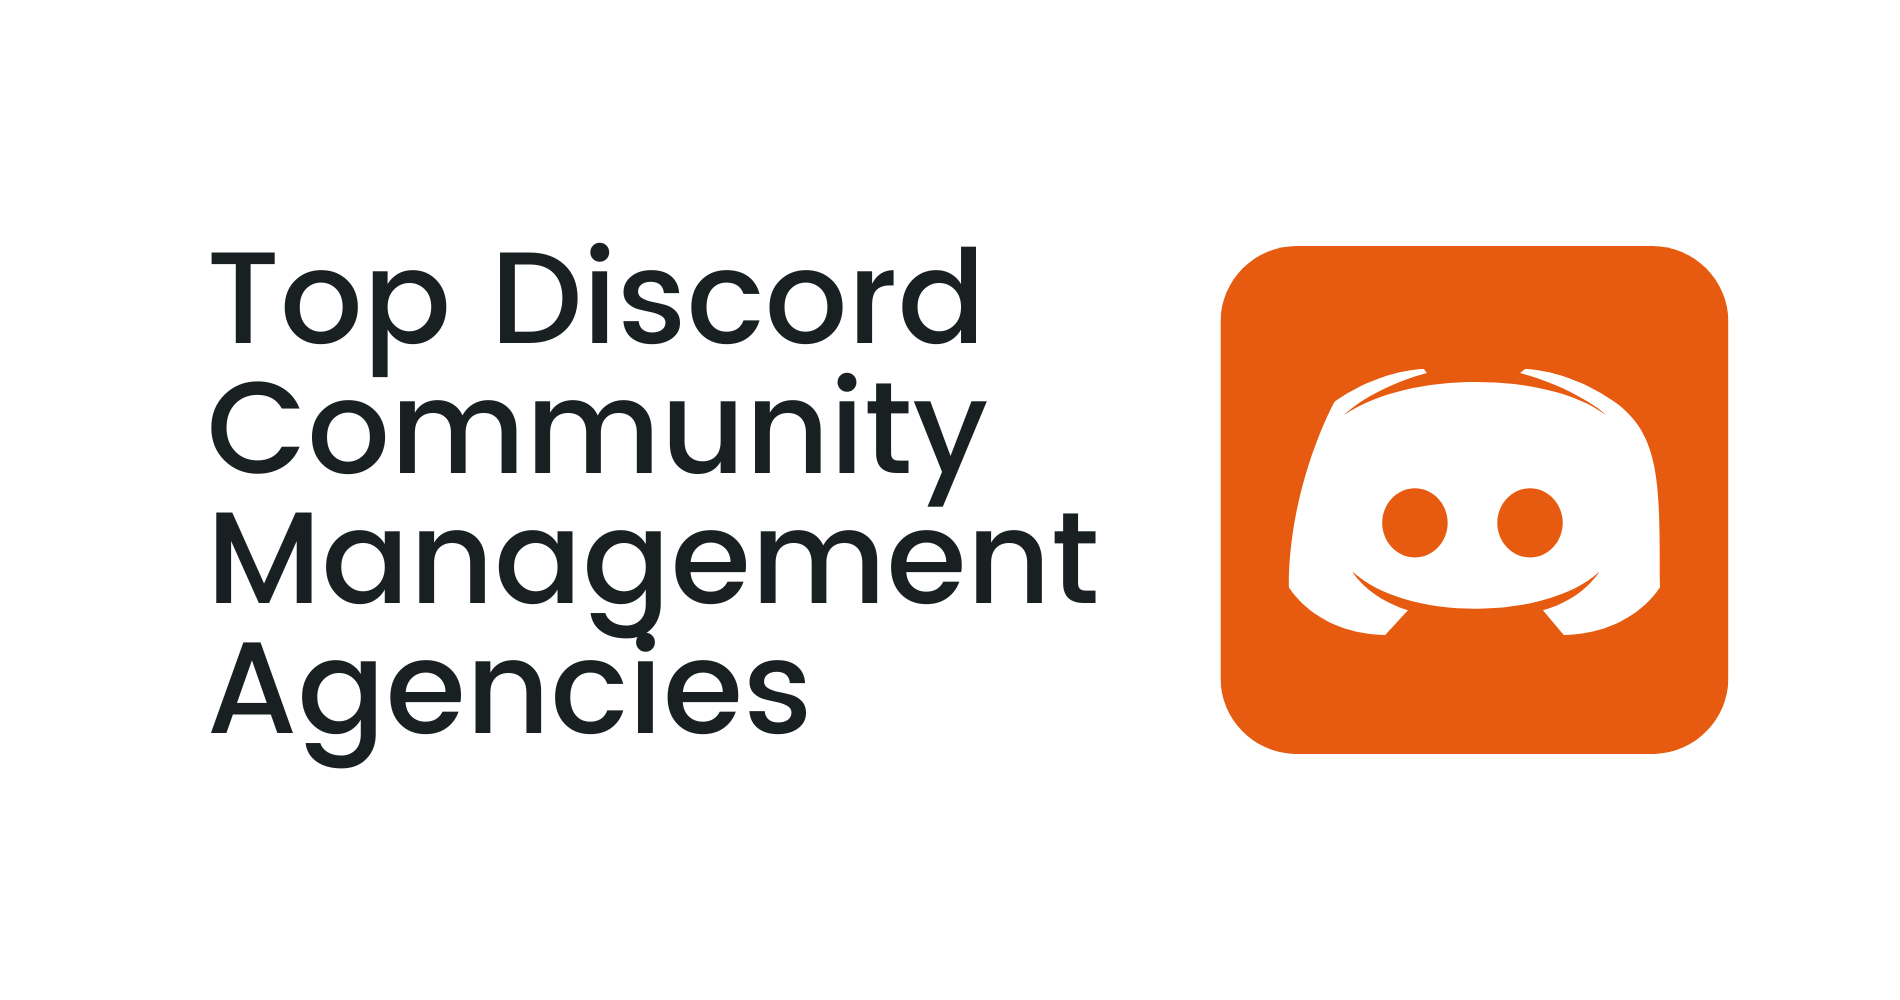 Top Discord Community Management Agencies